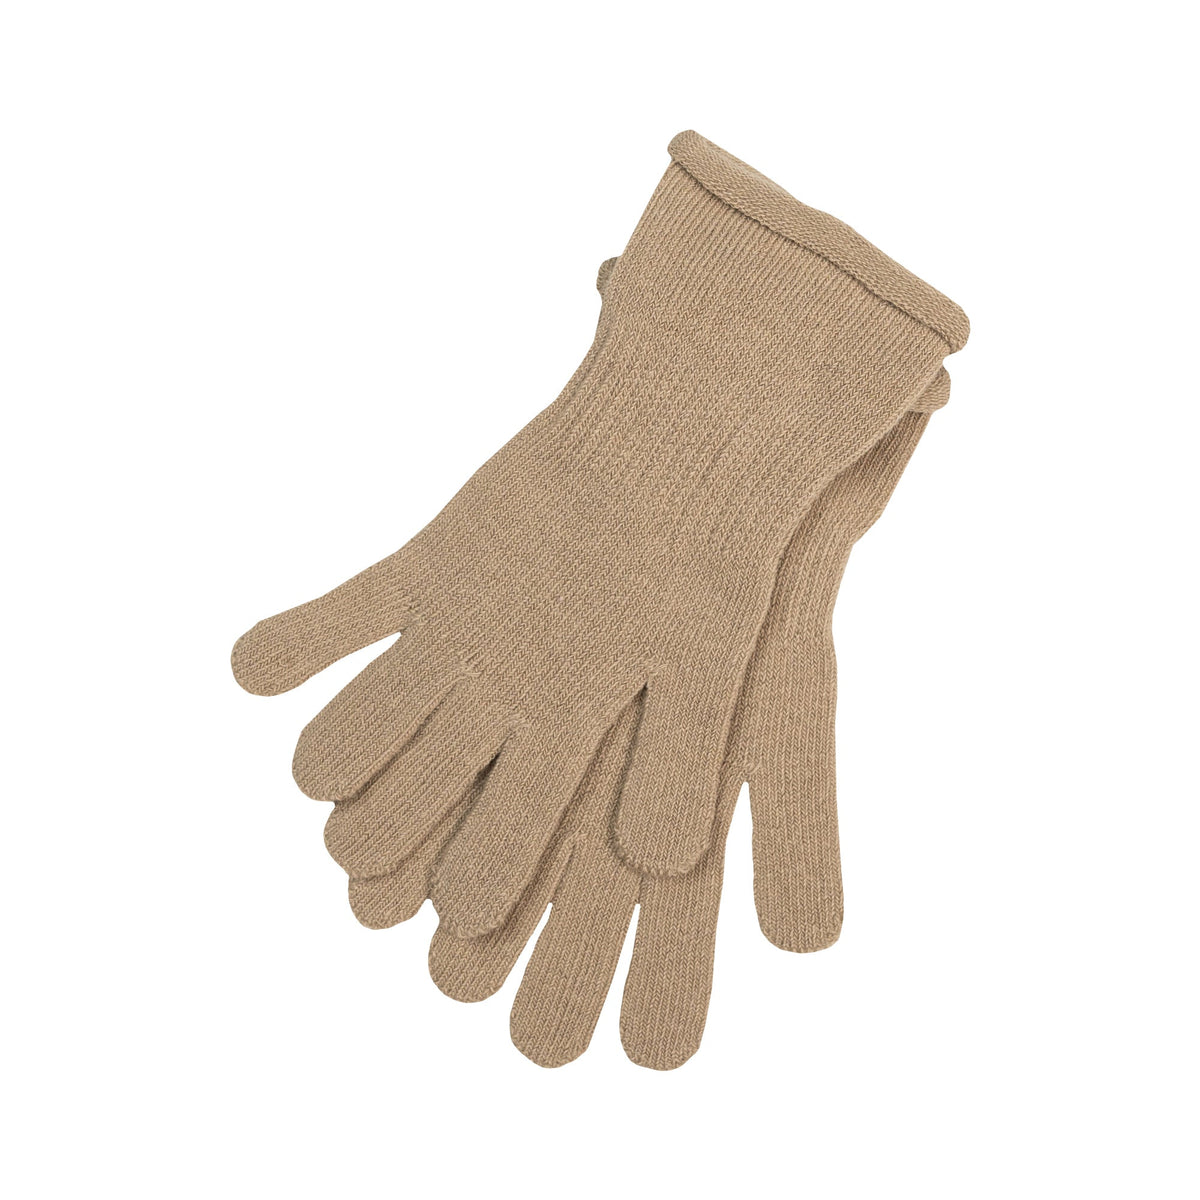 MENIQUE Knit Gloves Cotton